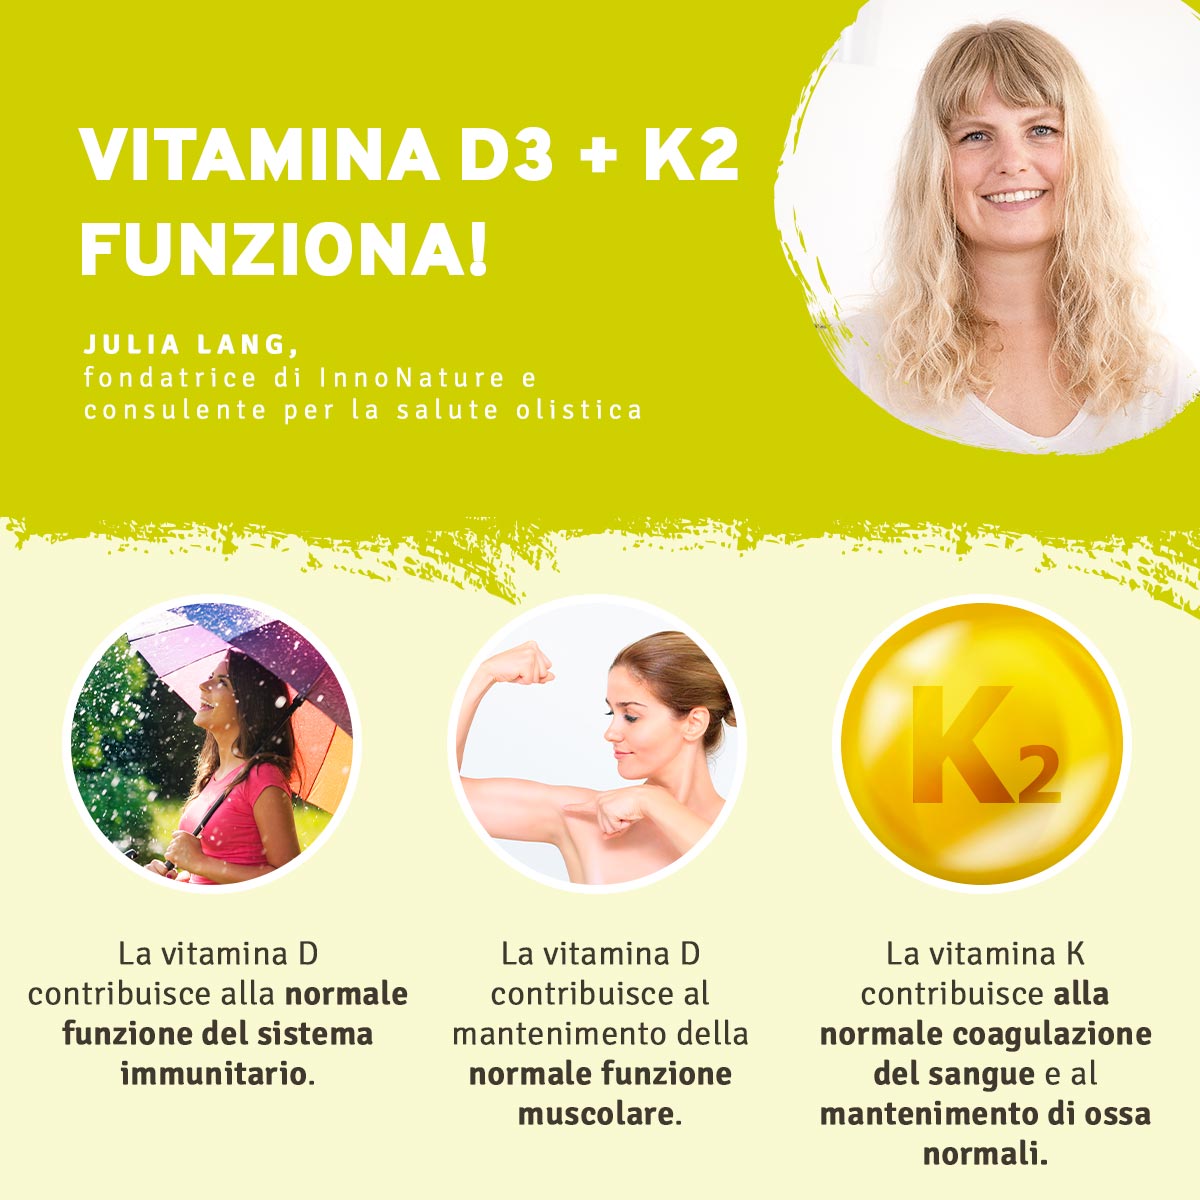 Vitamina D3 + K2 in gocce